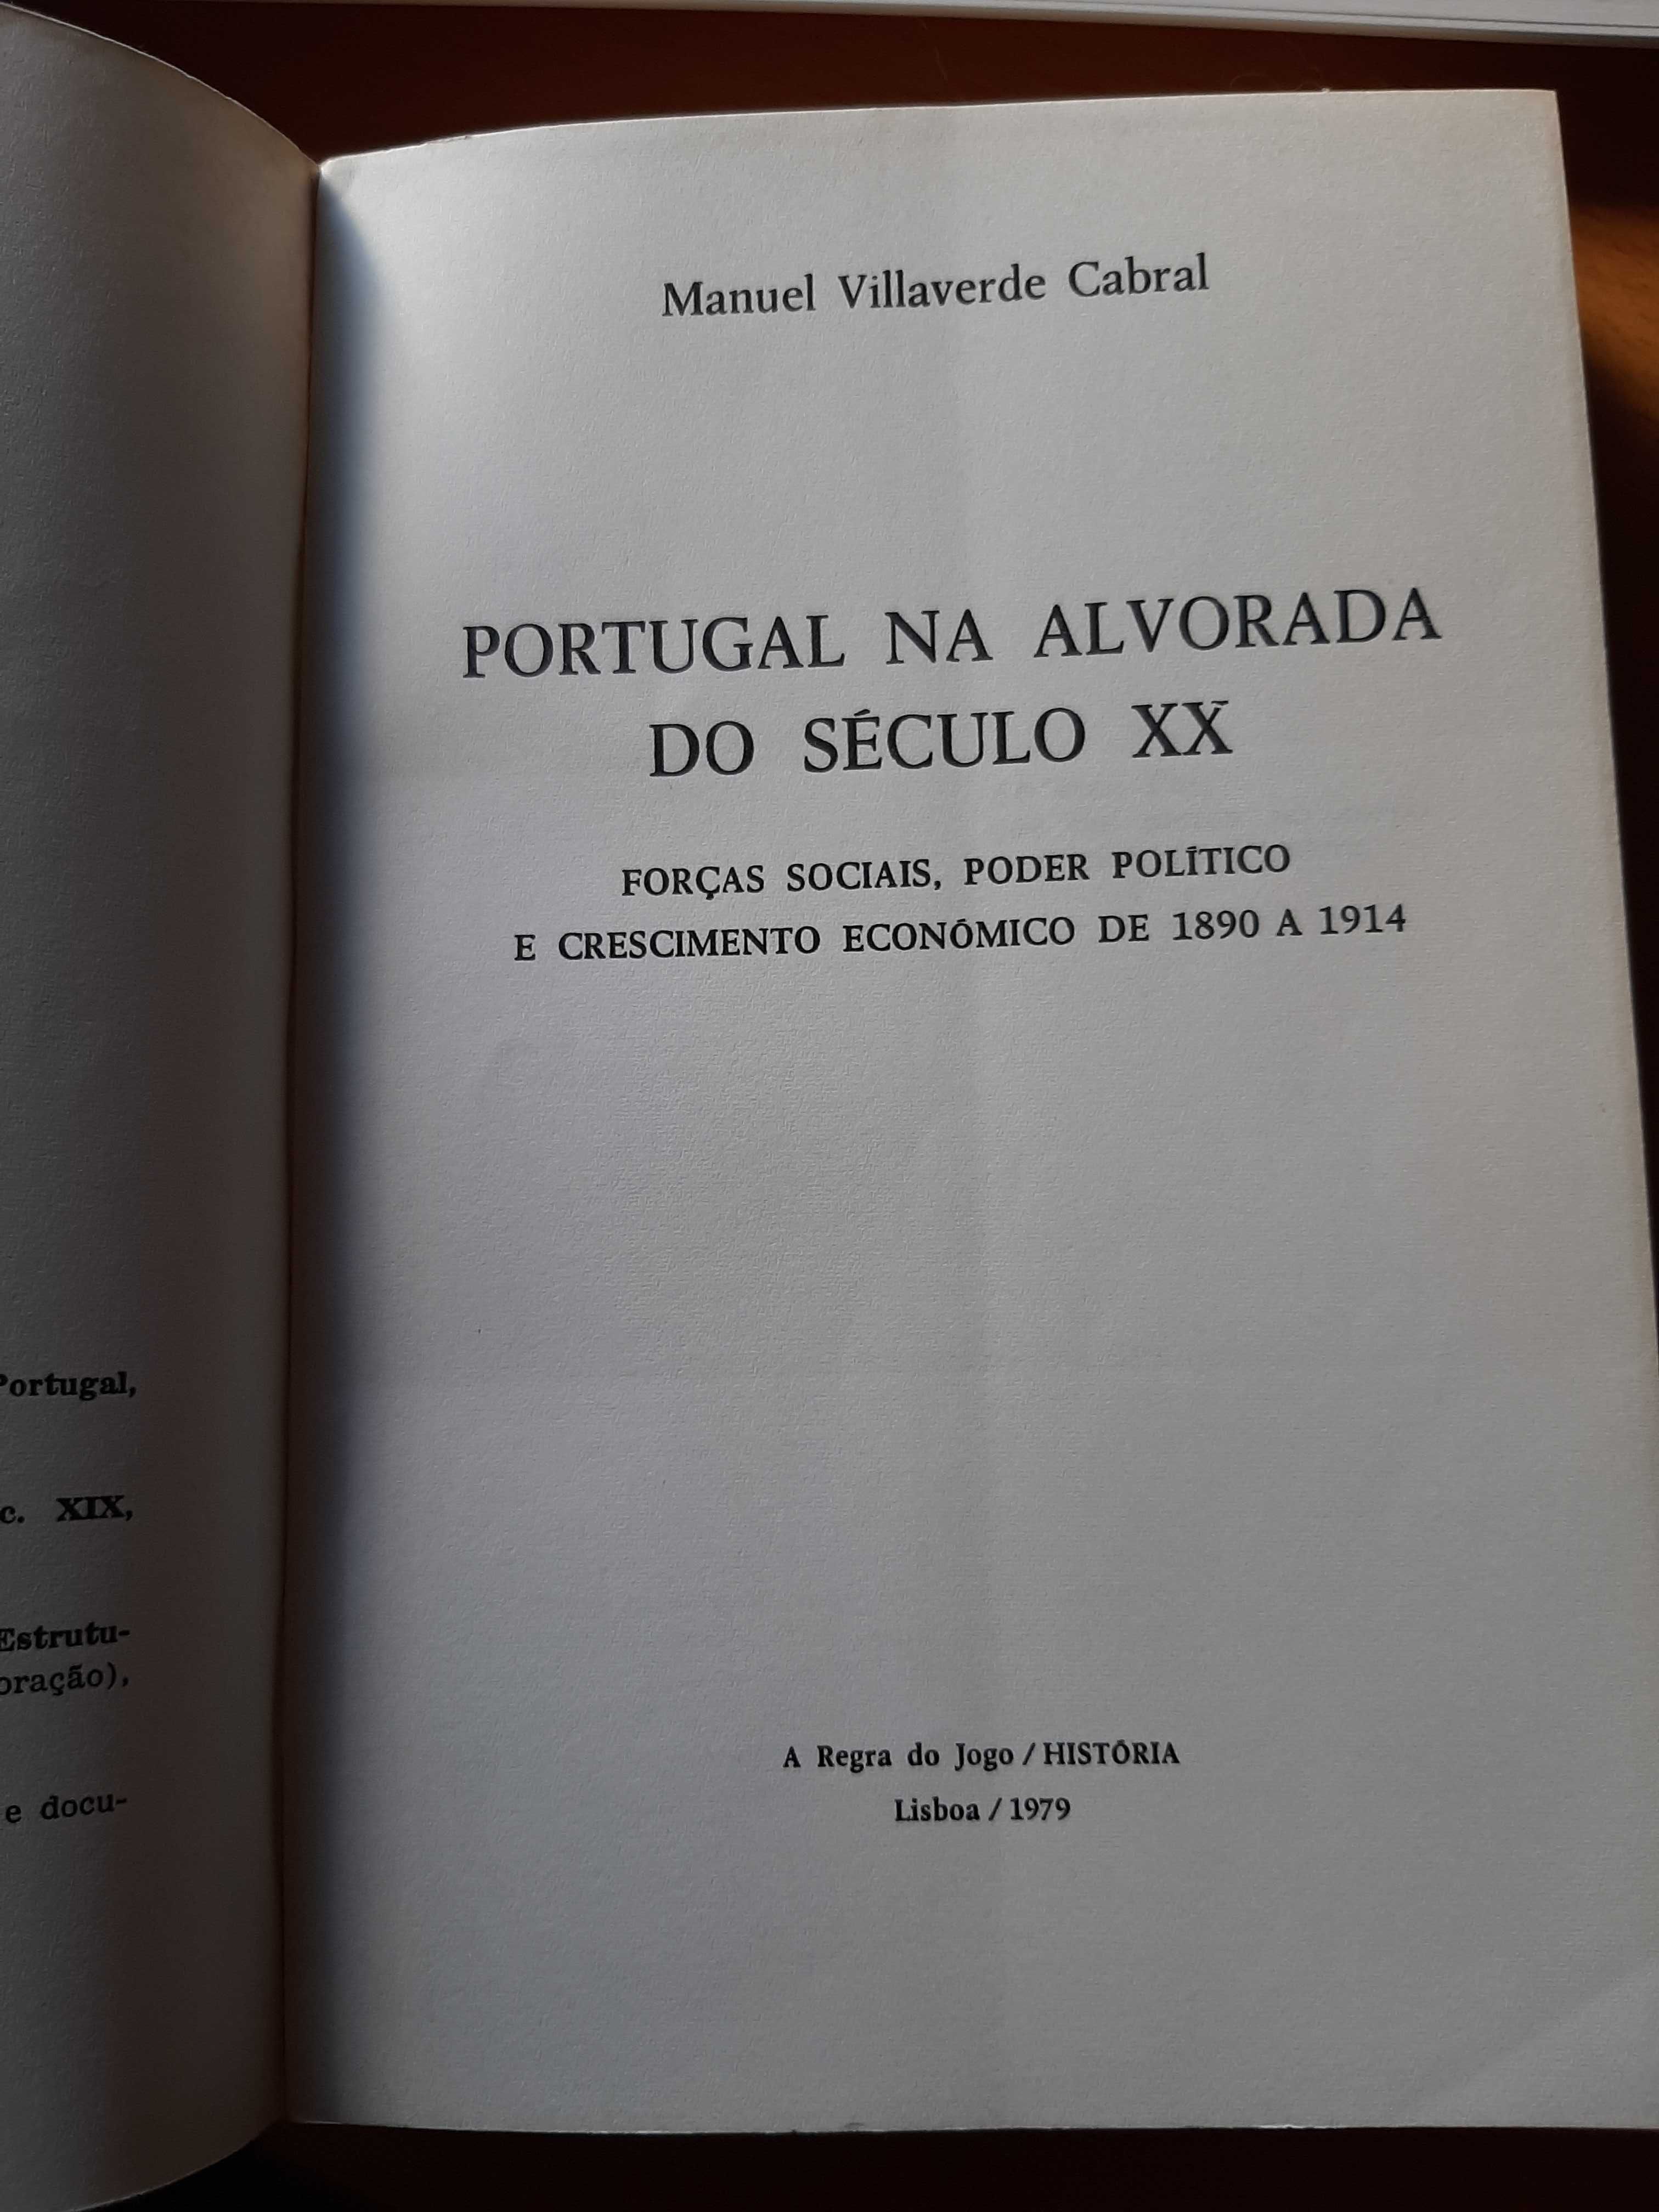 Portugal na alvorada do Seculo XX 1a edição